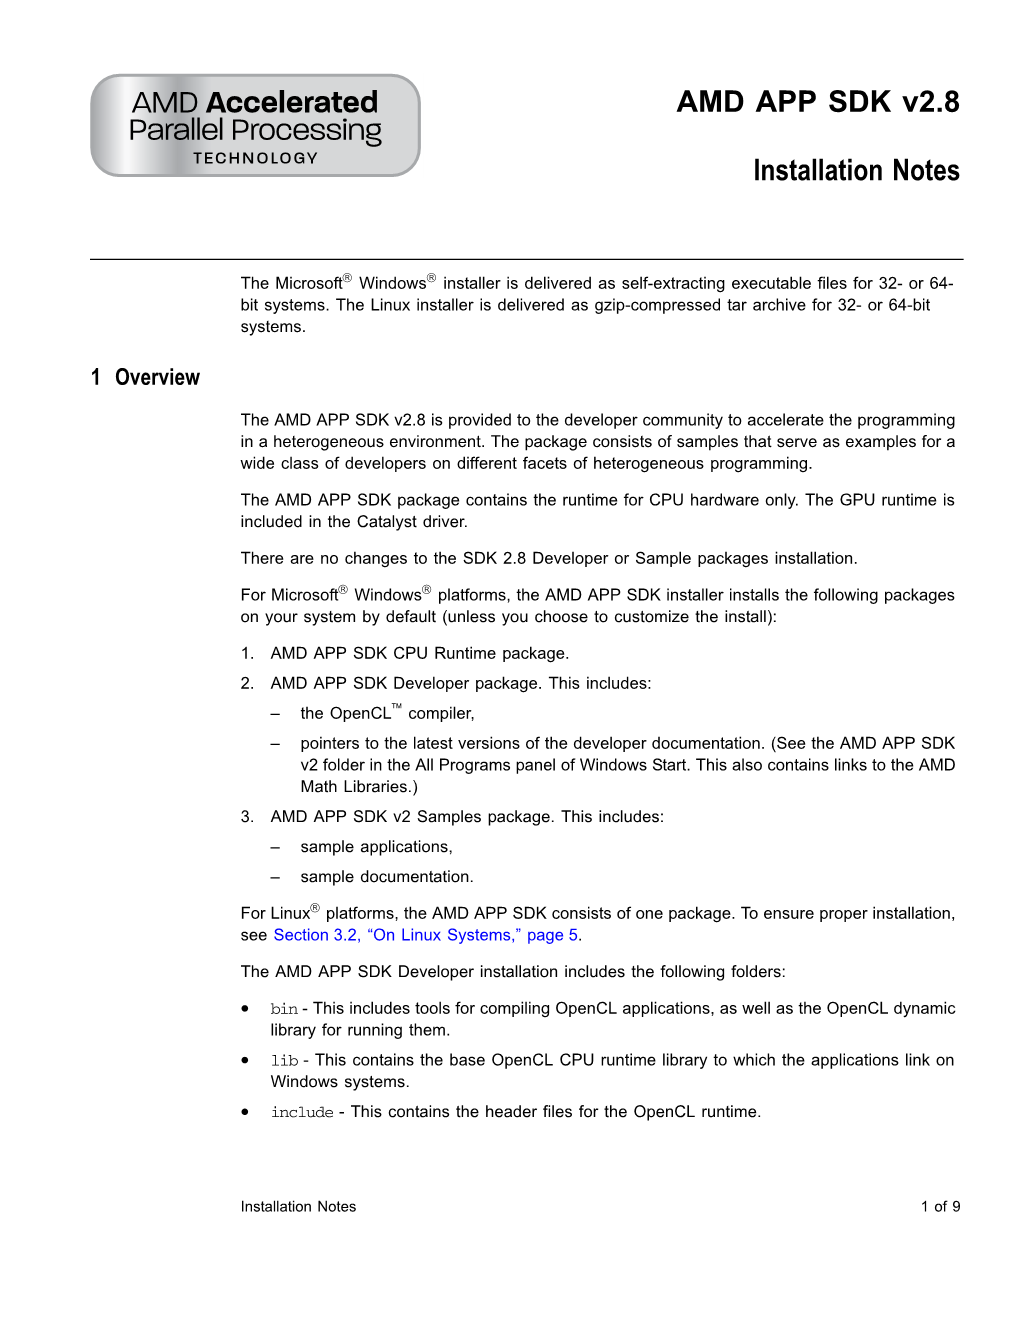 AMD APP SDK V2.8 Installation Notes